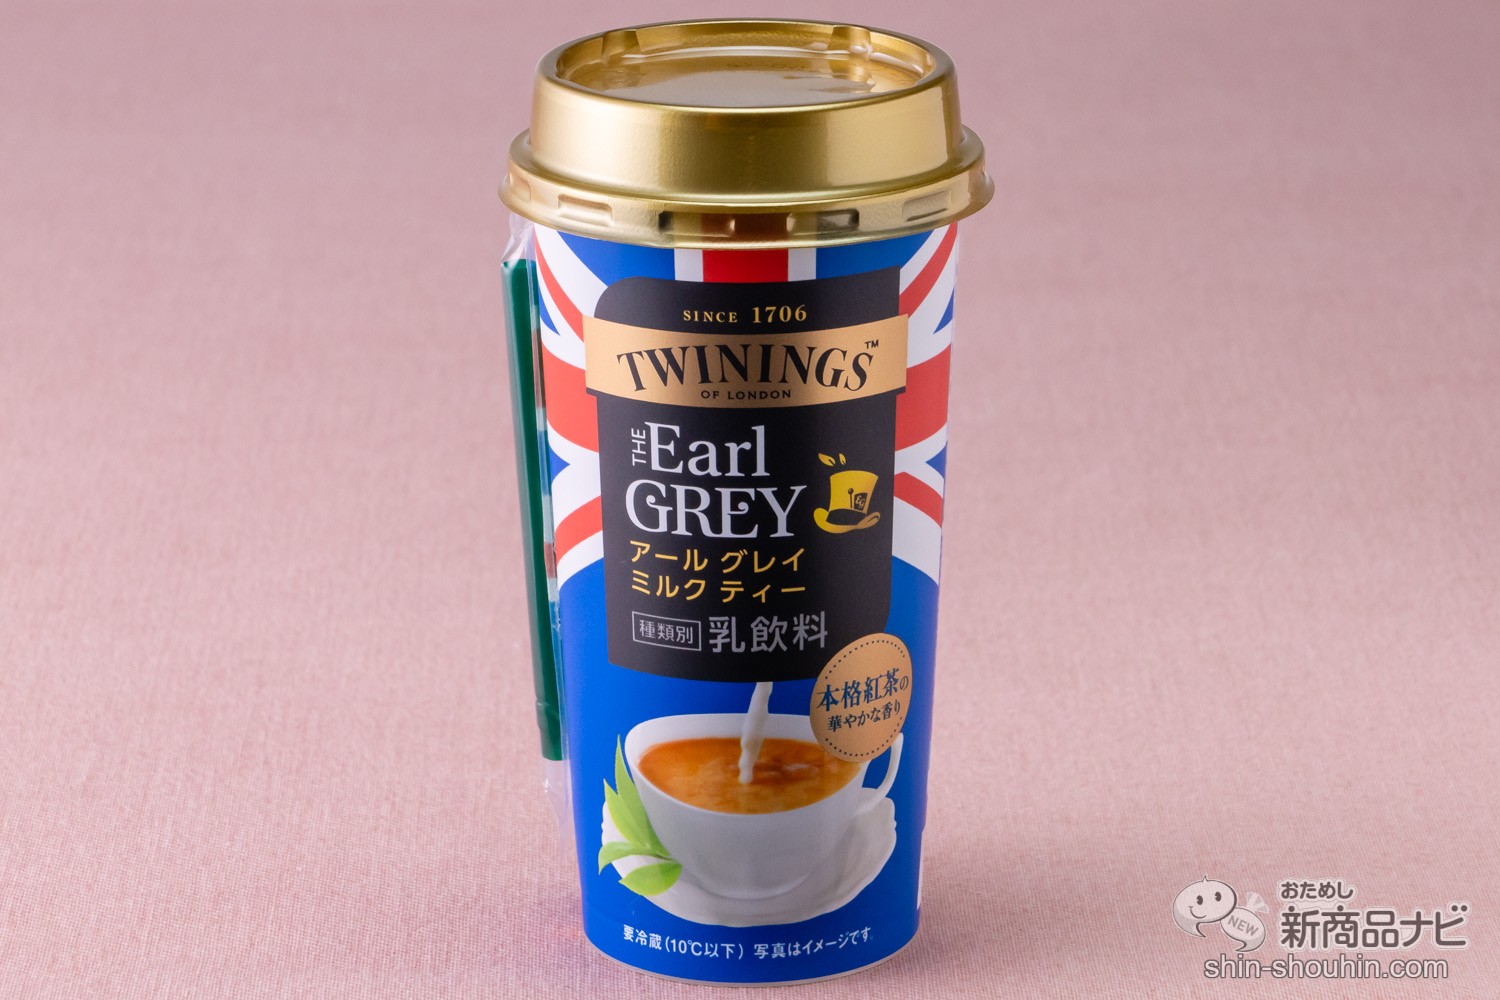 おためし新商品ナビ » Blog Archive » 豊潤な茶葉の香りが楽しめる 